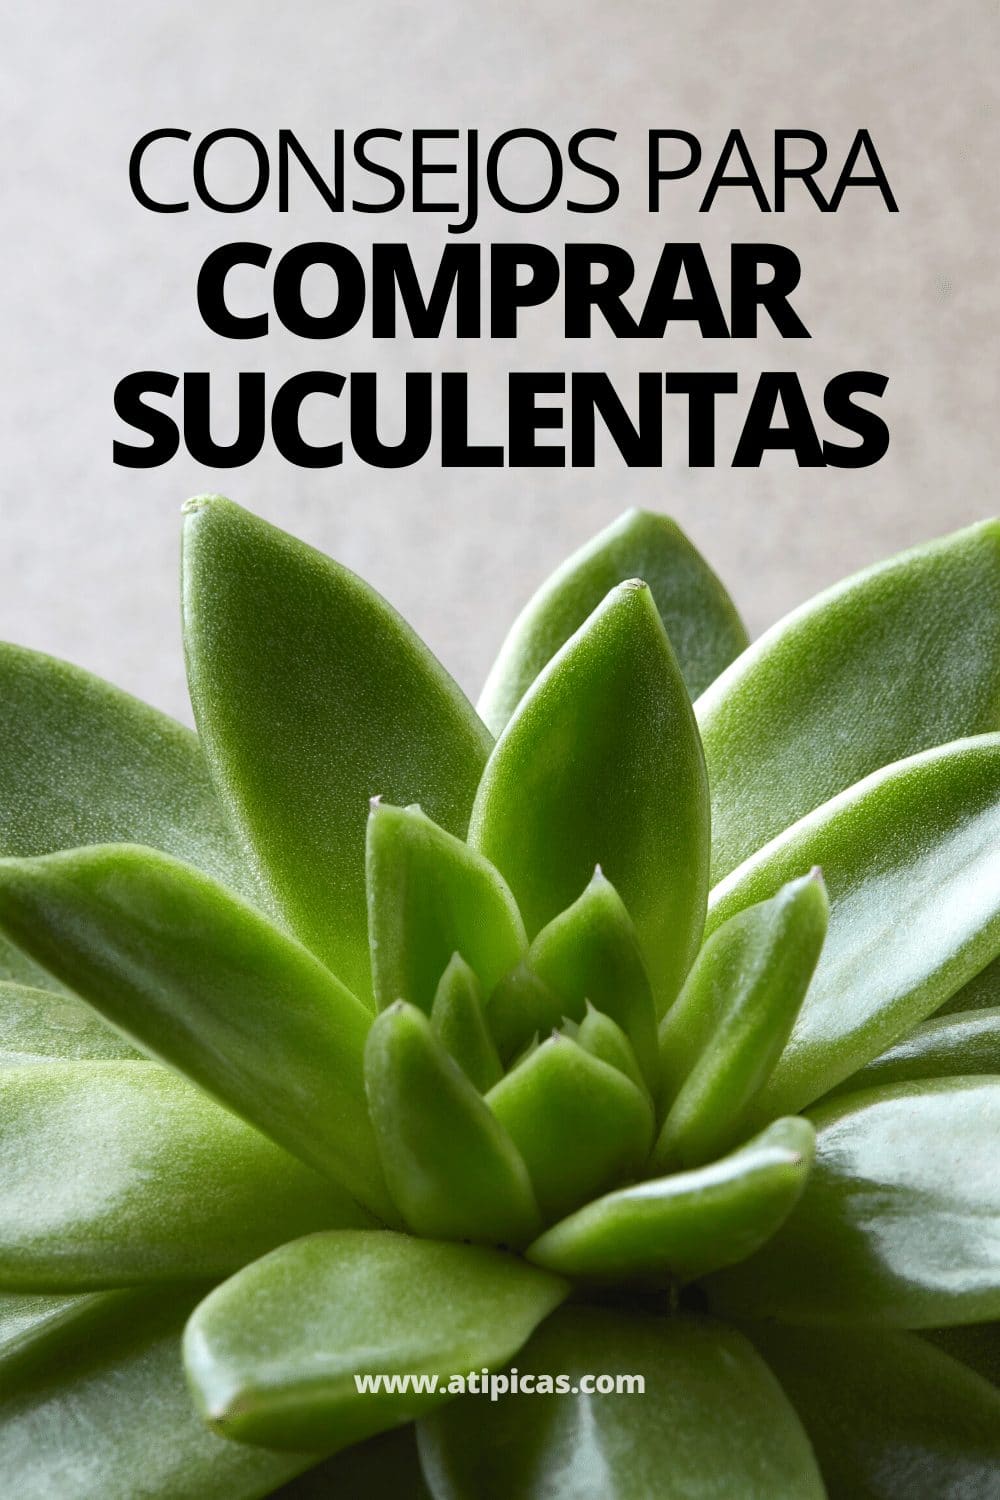 Consejos para comprar suculentas y cactus